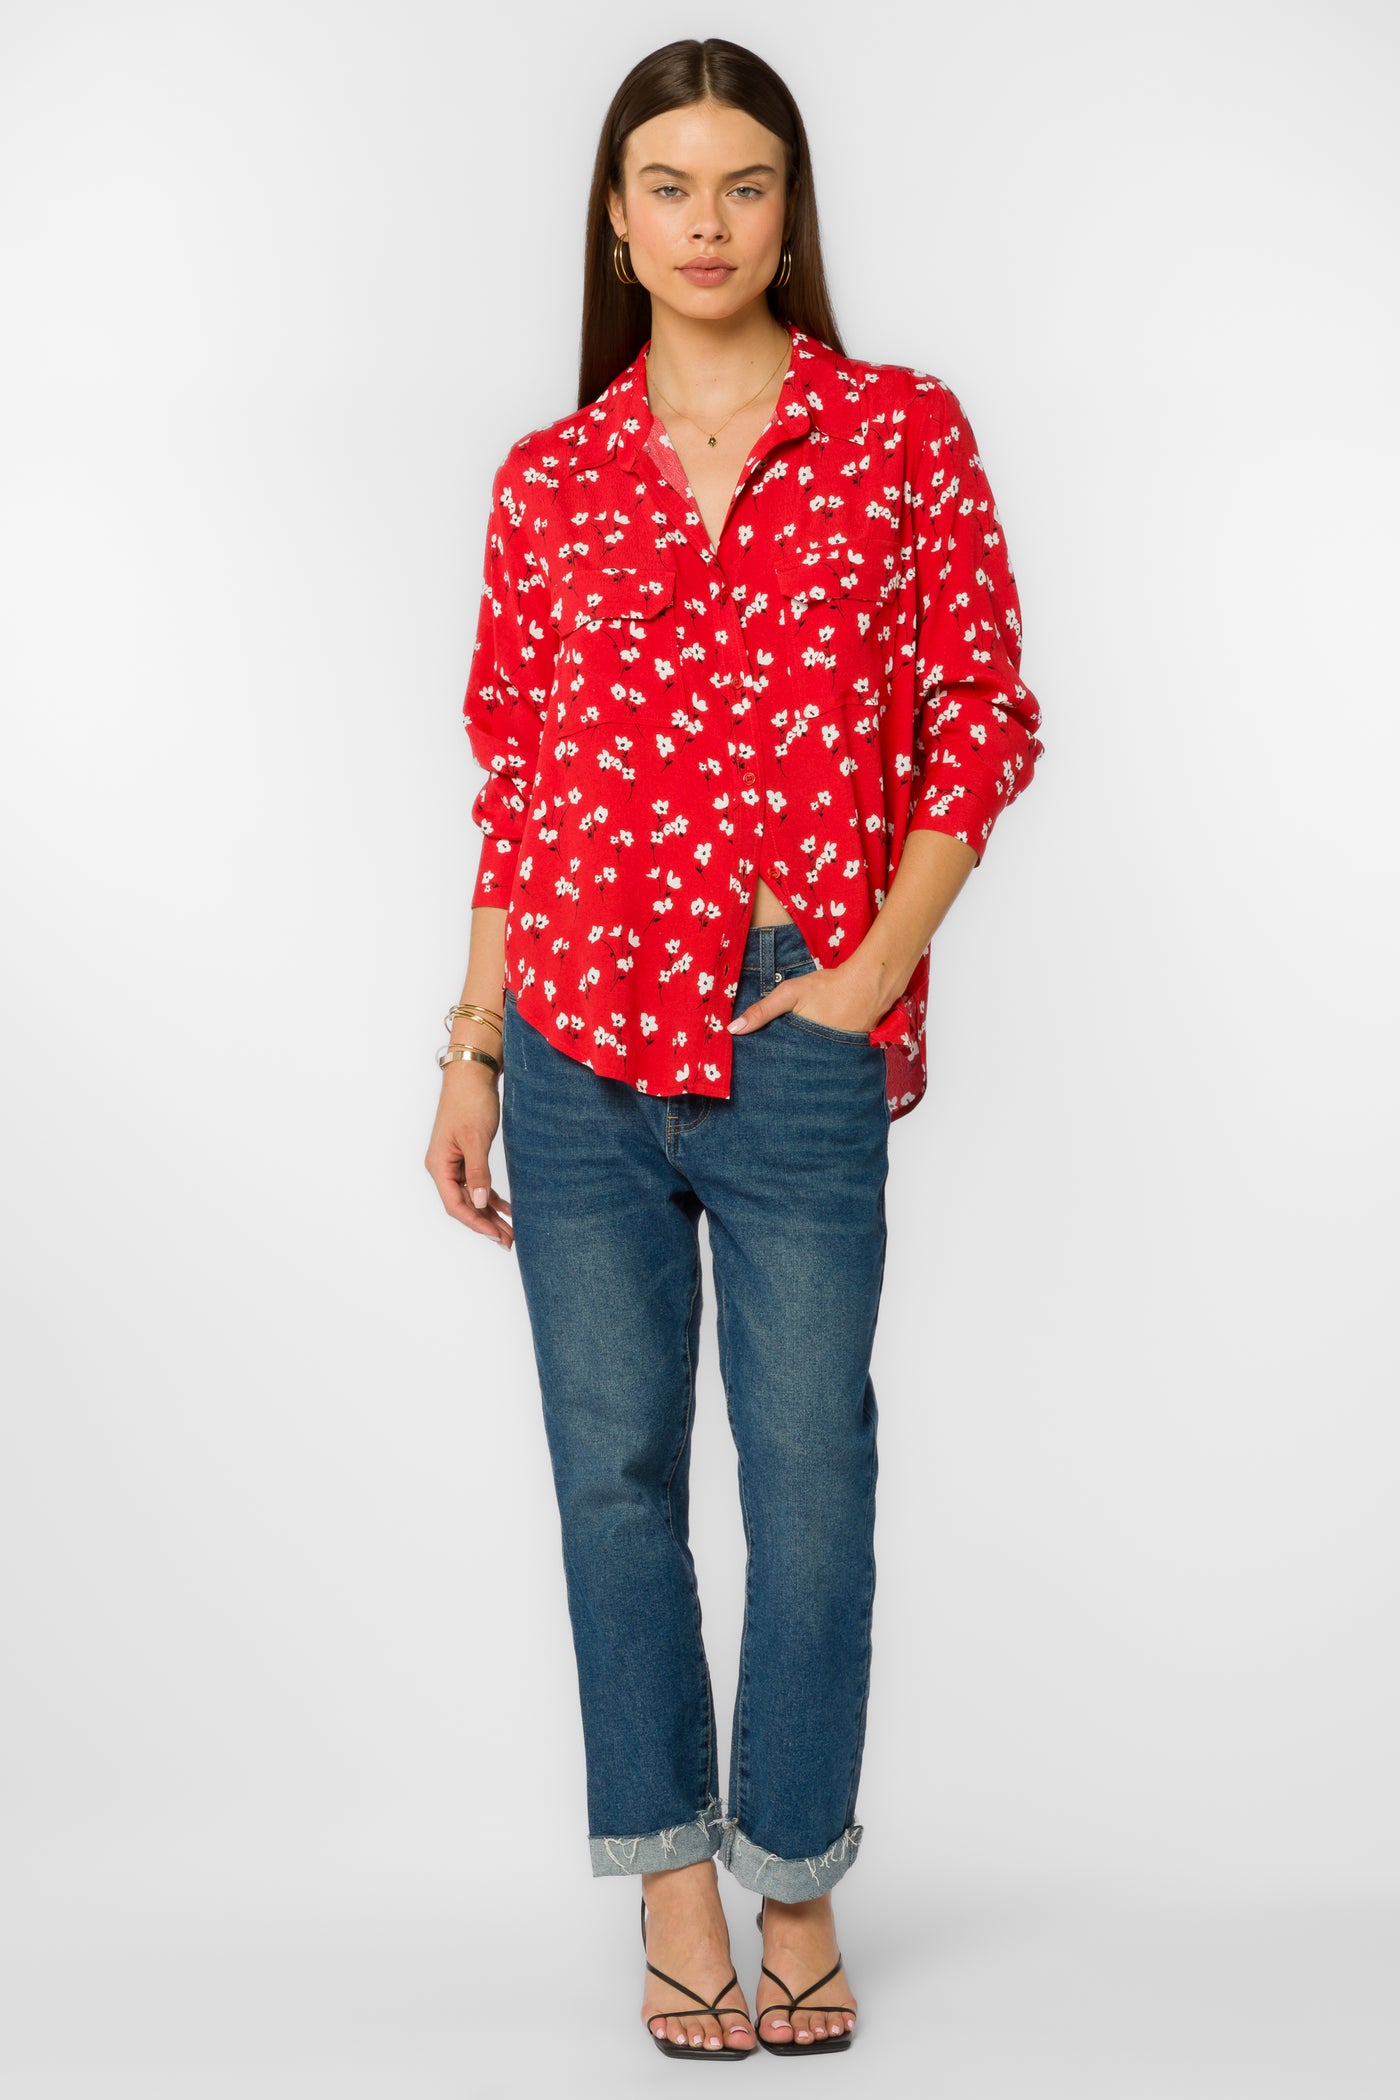 Kacia Red Poppy Shirt - Tops - Velvet Heart Clothing